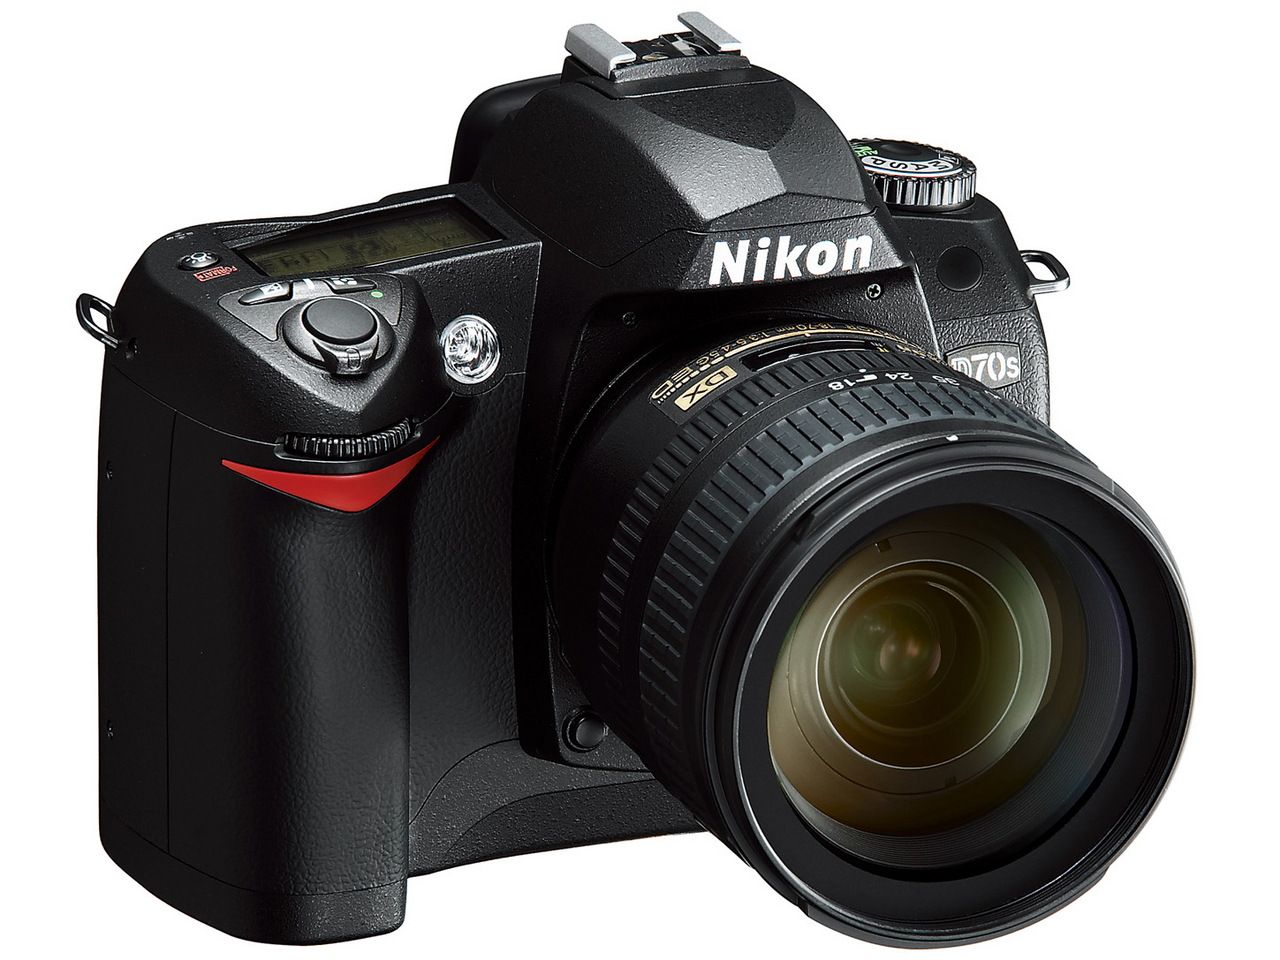  Nikon D70s корпус однообъективный зеркальный камера новый товар 